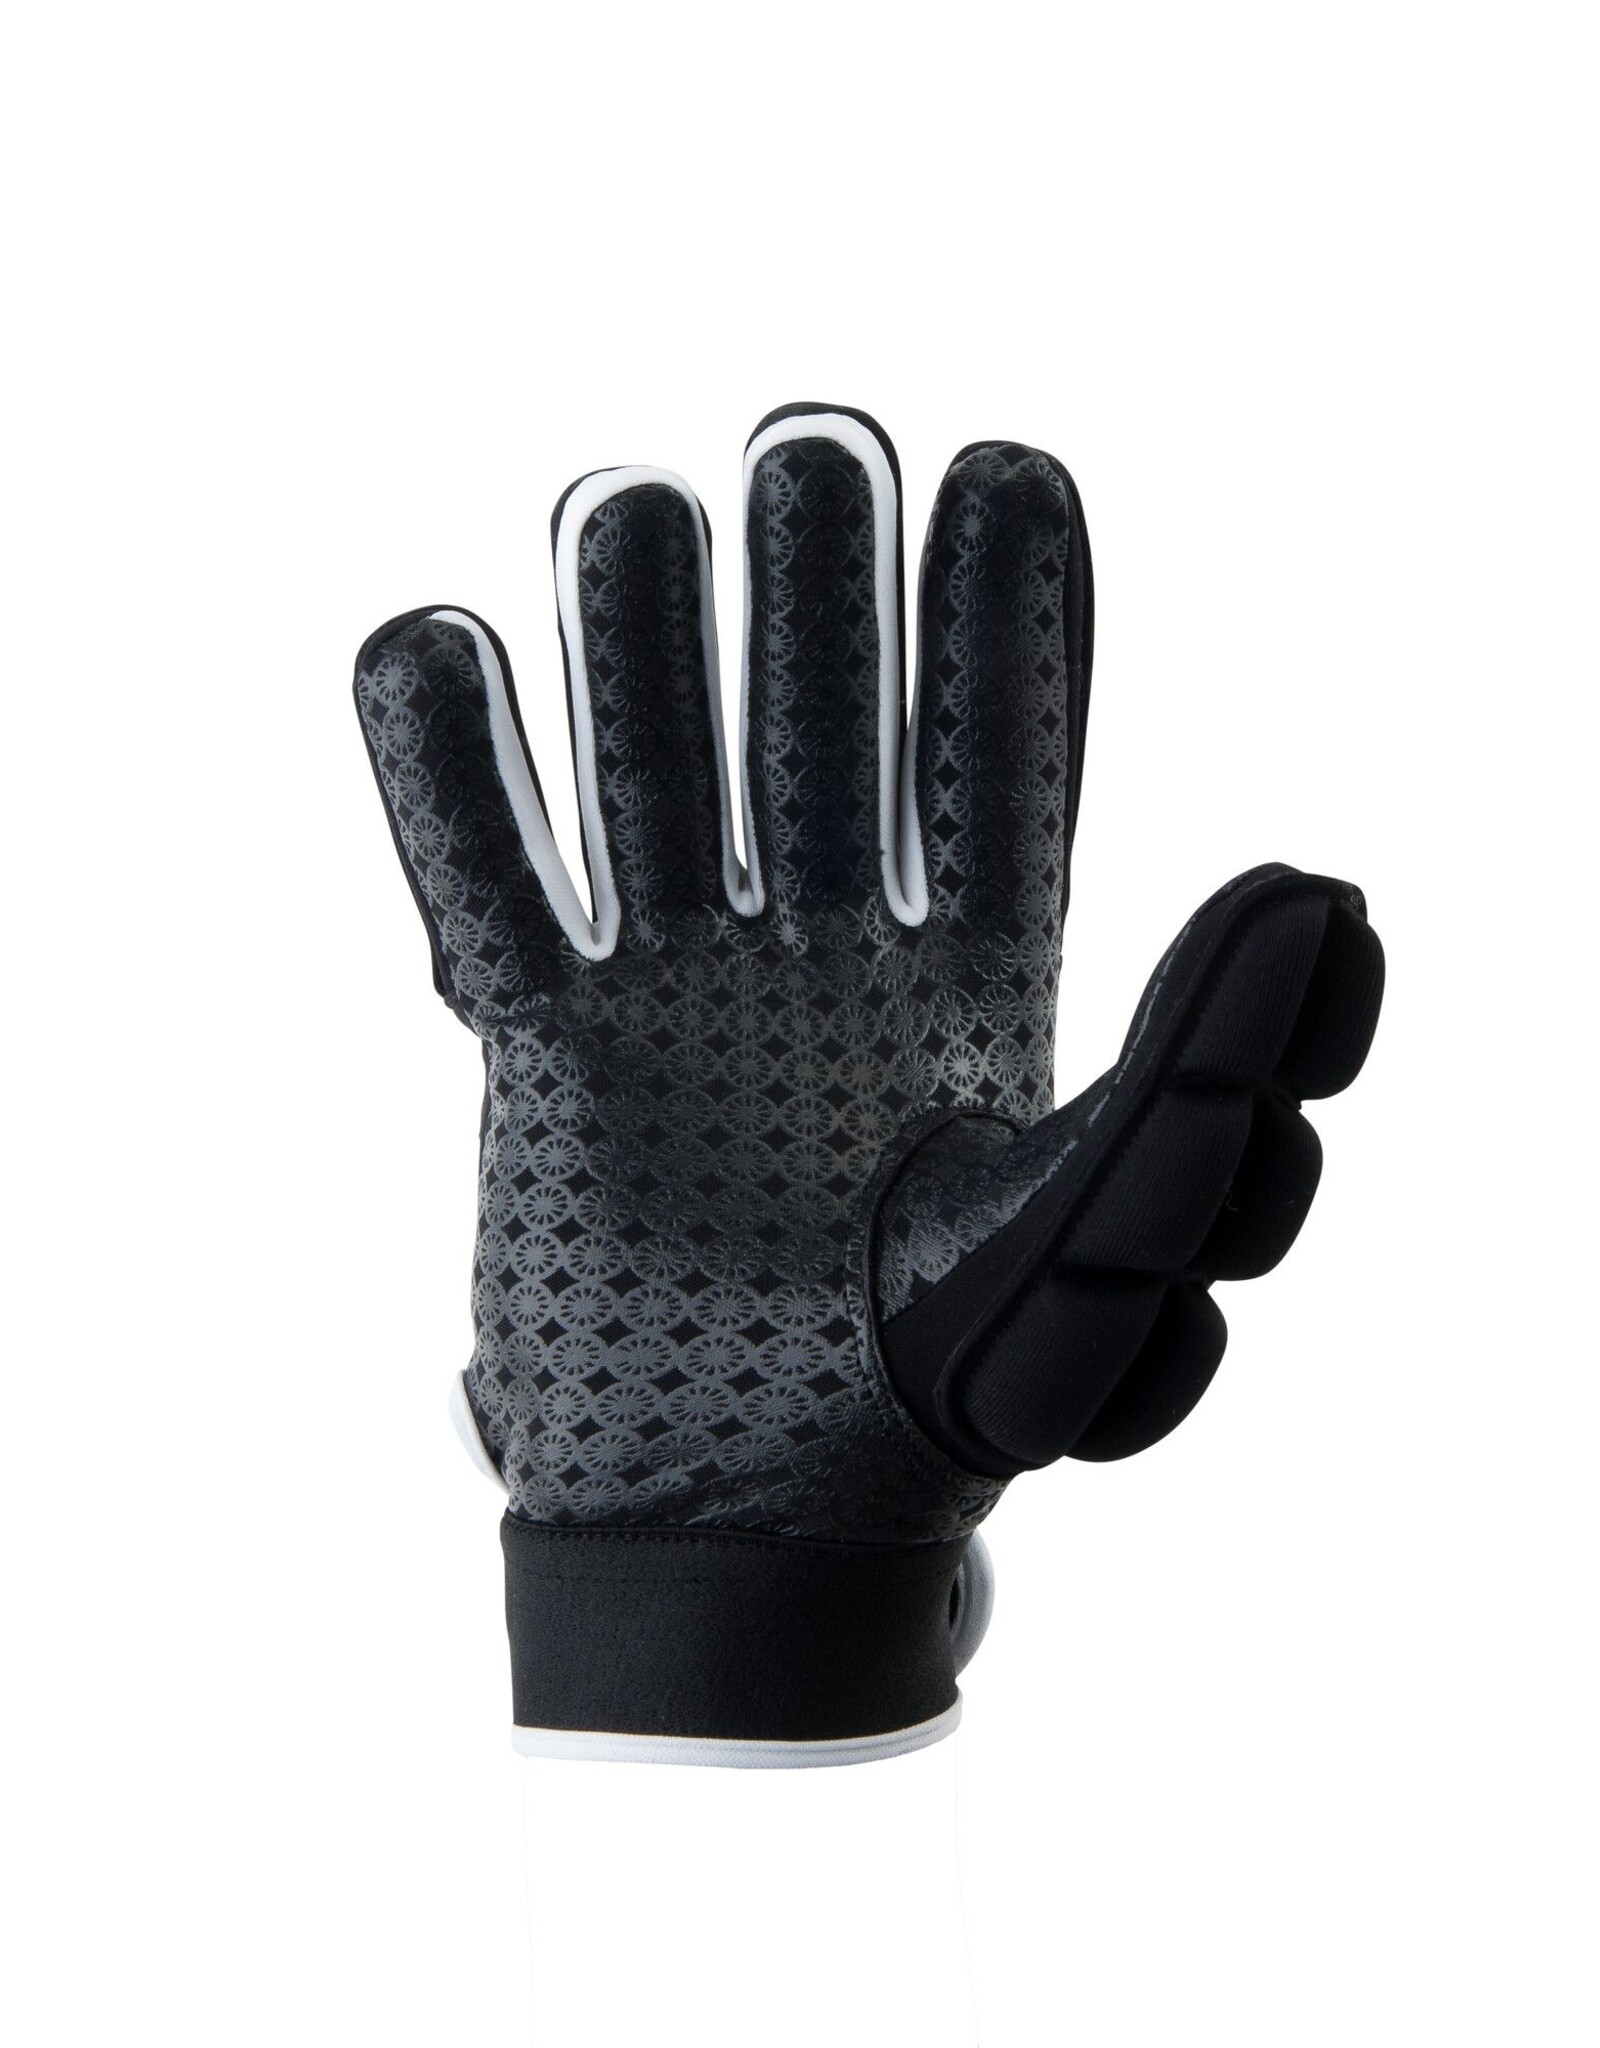 The Indian Maharadja The Indian Maharadja Glove shell/foam full finger [right]-black